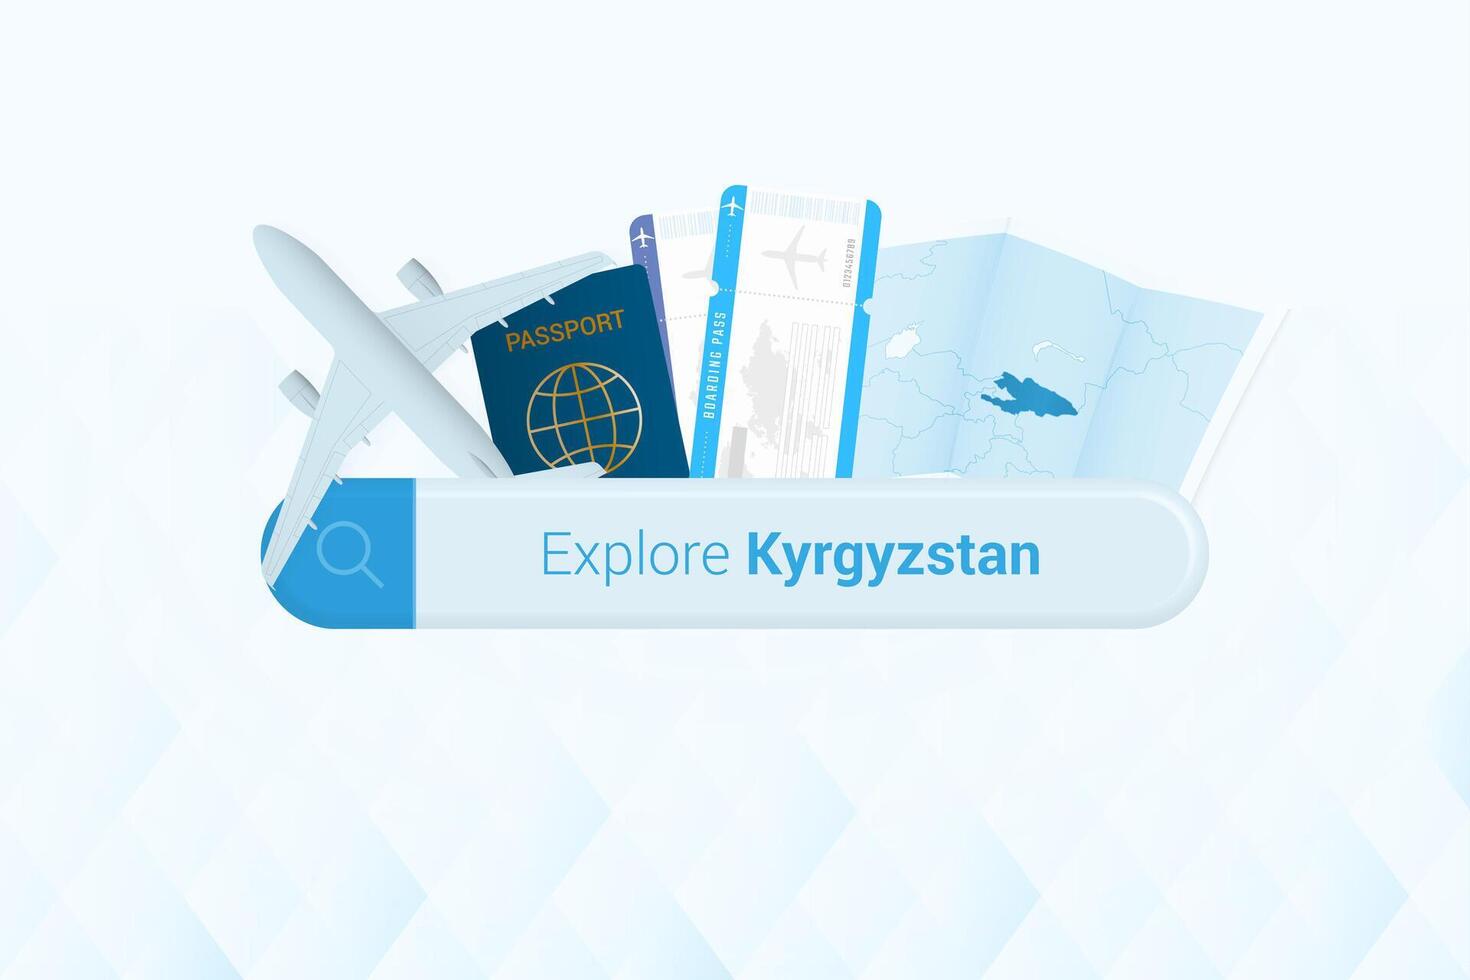 buscando Entradas a Kirguistán o viaje destino en Kirguistán. buscando bar con avión, pasaporte, embarque aprobar, Entradas y mapa. vector